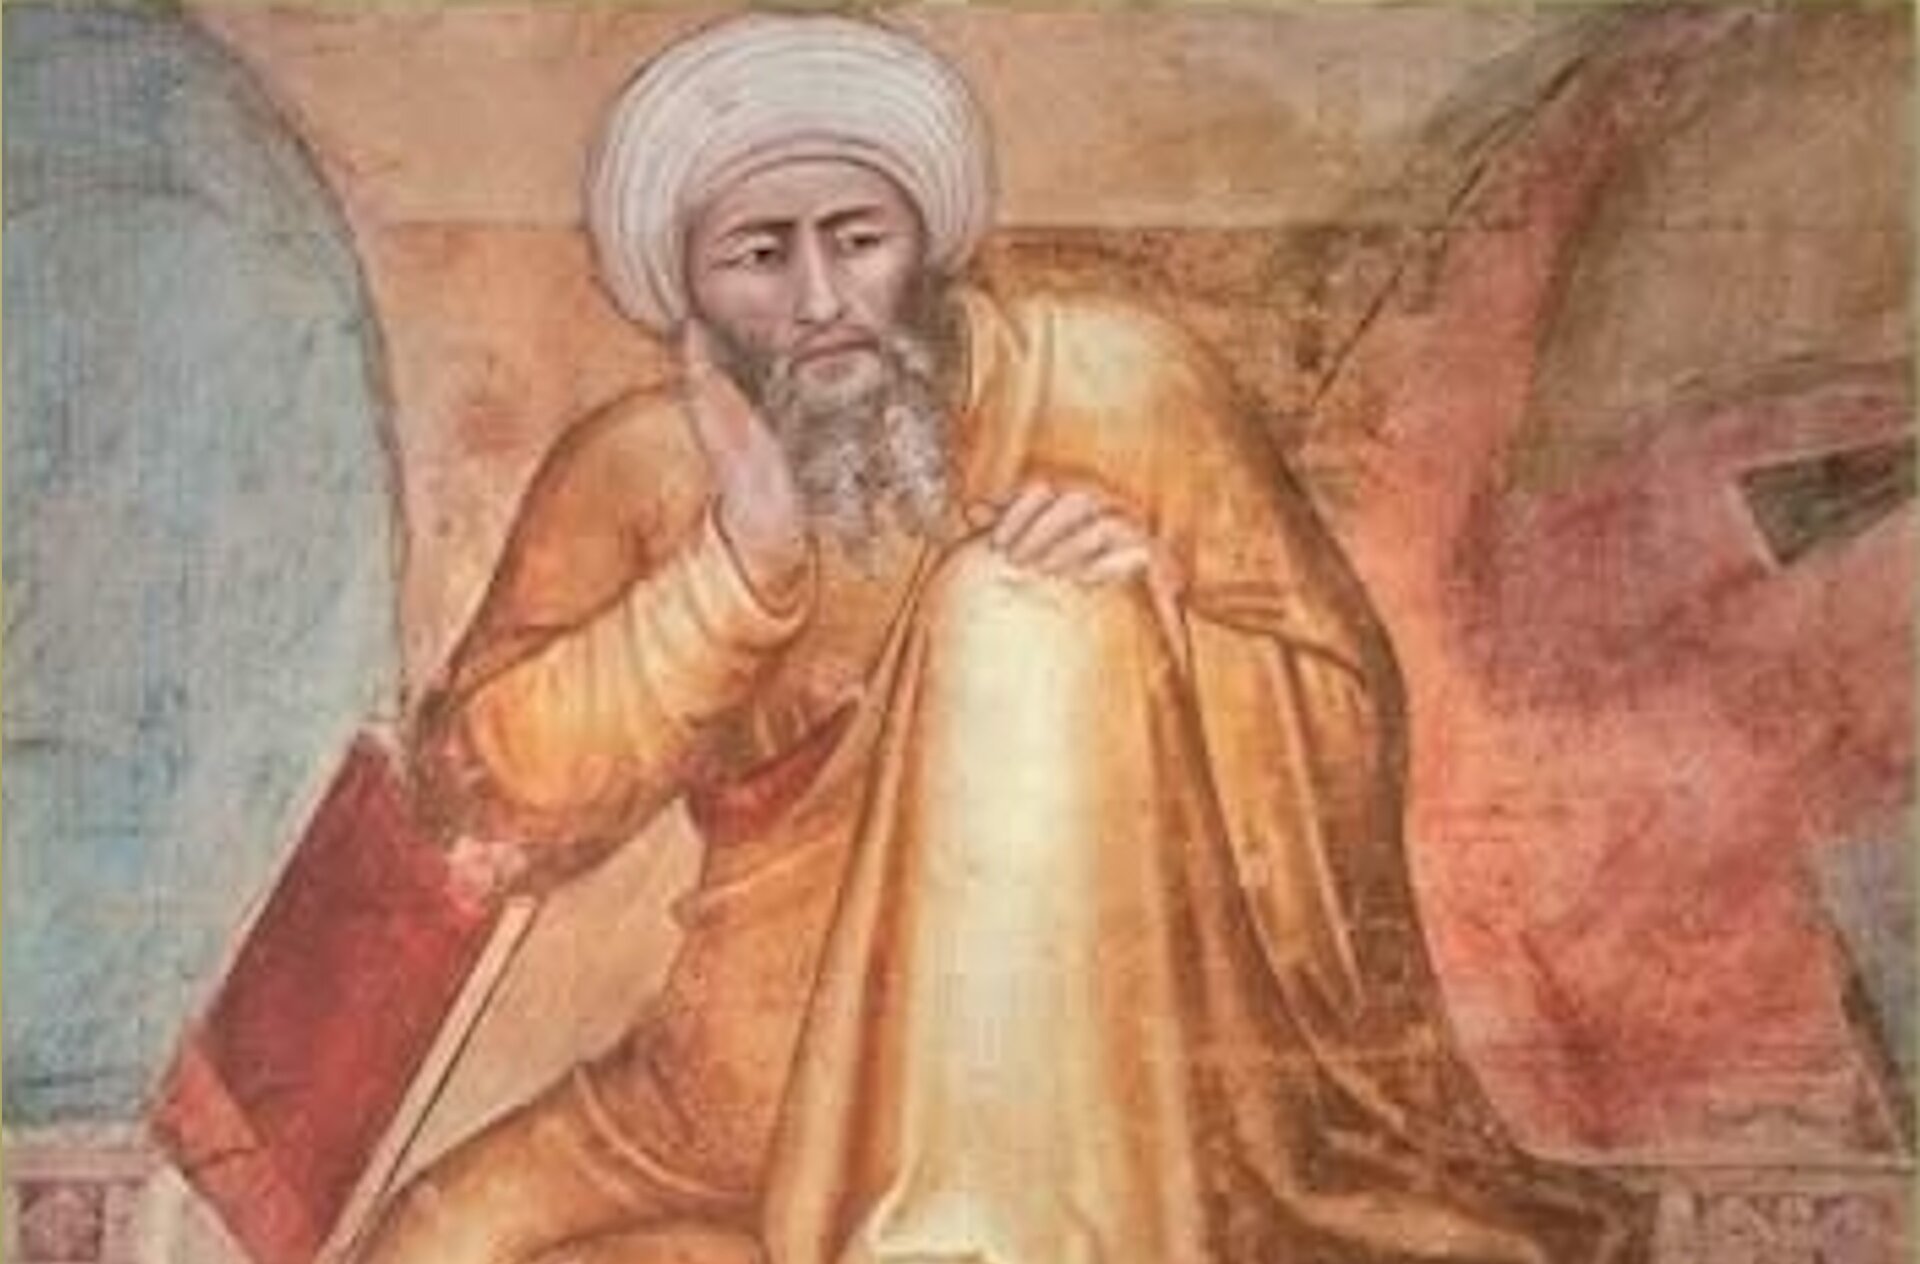 Obraz przedstawia dojrzałego mężczyznę. Mężczyzna siedzi, podpierając głowę na prawej ręce. Ubrany jest w długą szatę, na głowie ma turban.